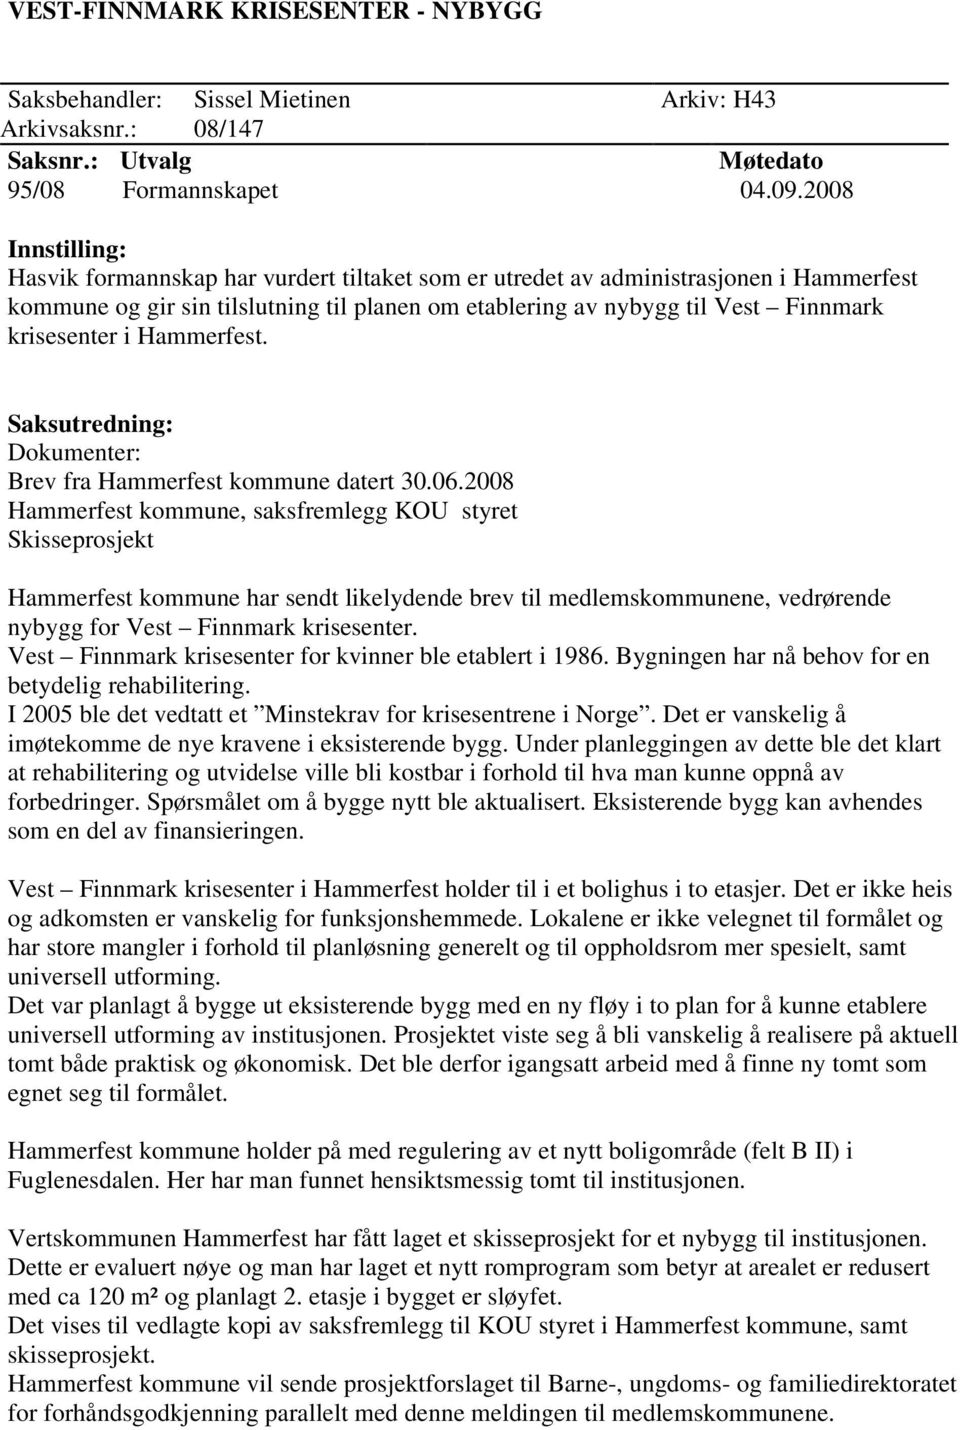 krisesenter i Hammerfest. Saksutredning: Dokumenter: Brev fra Hammerfest kommune datert 30.06.